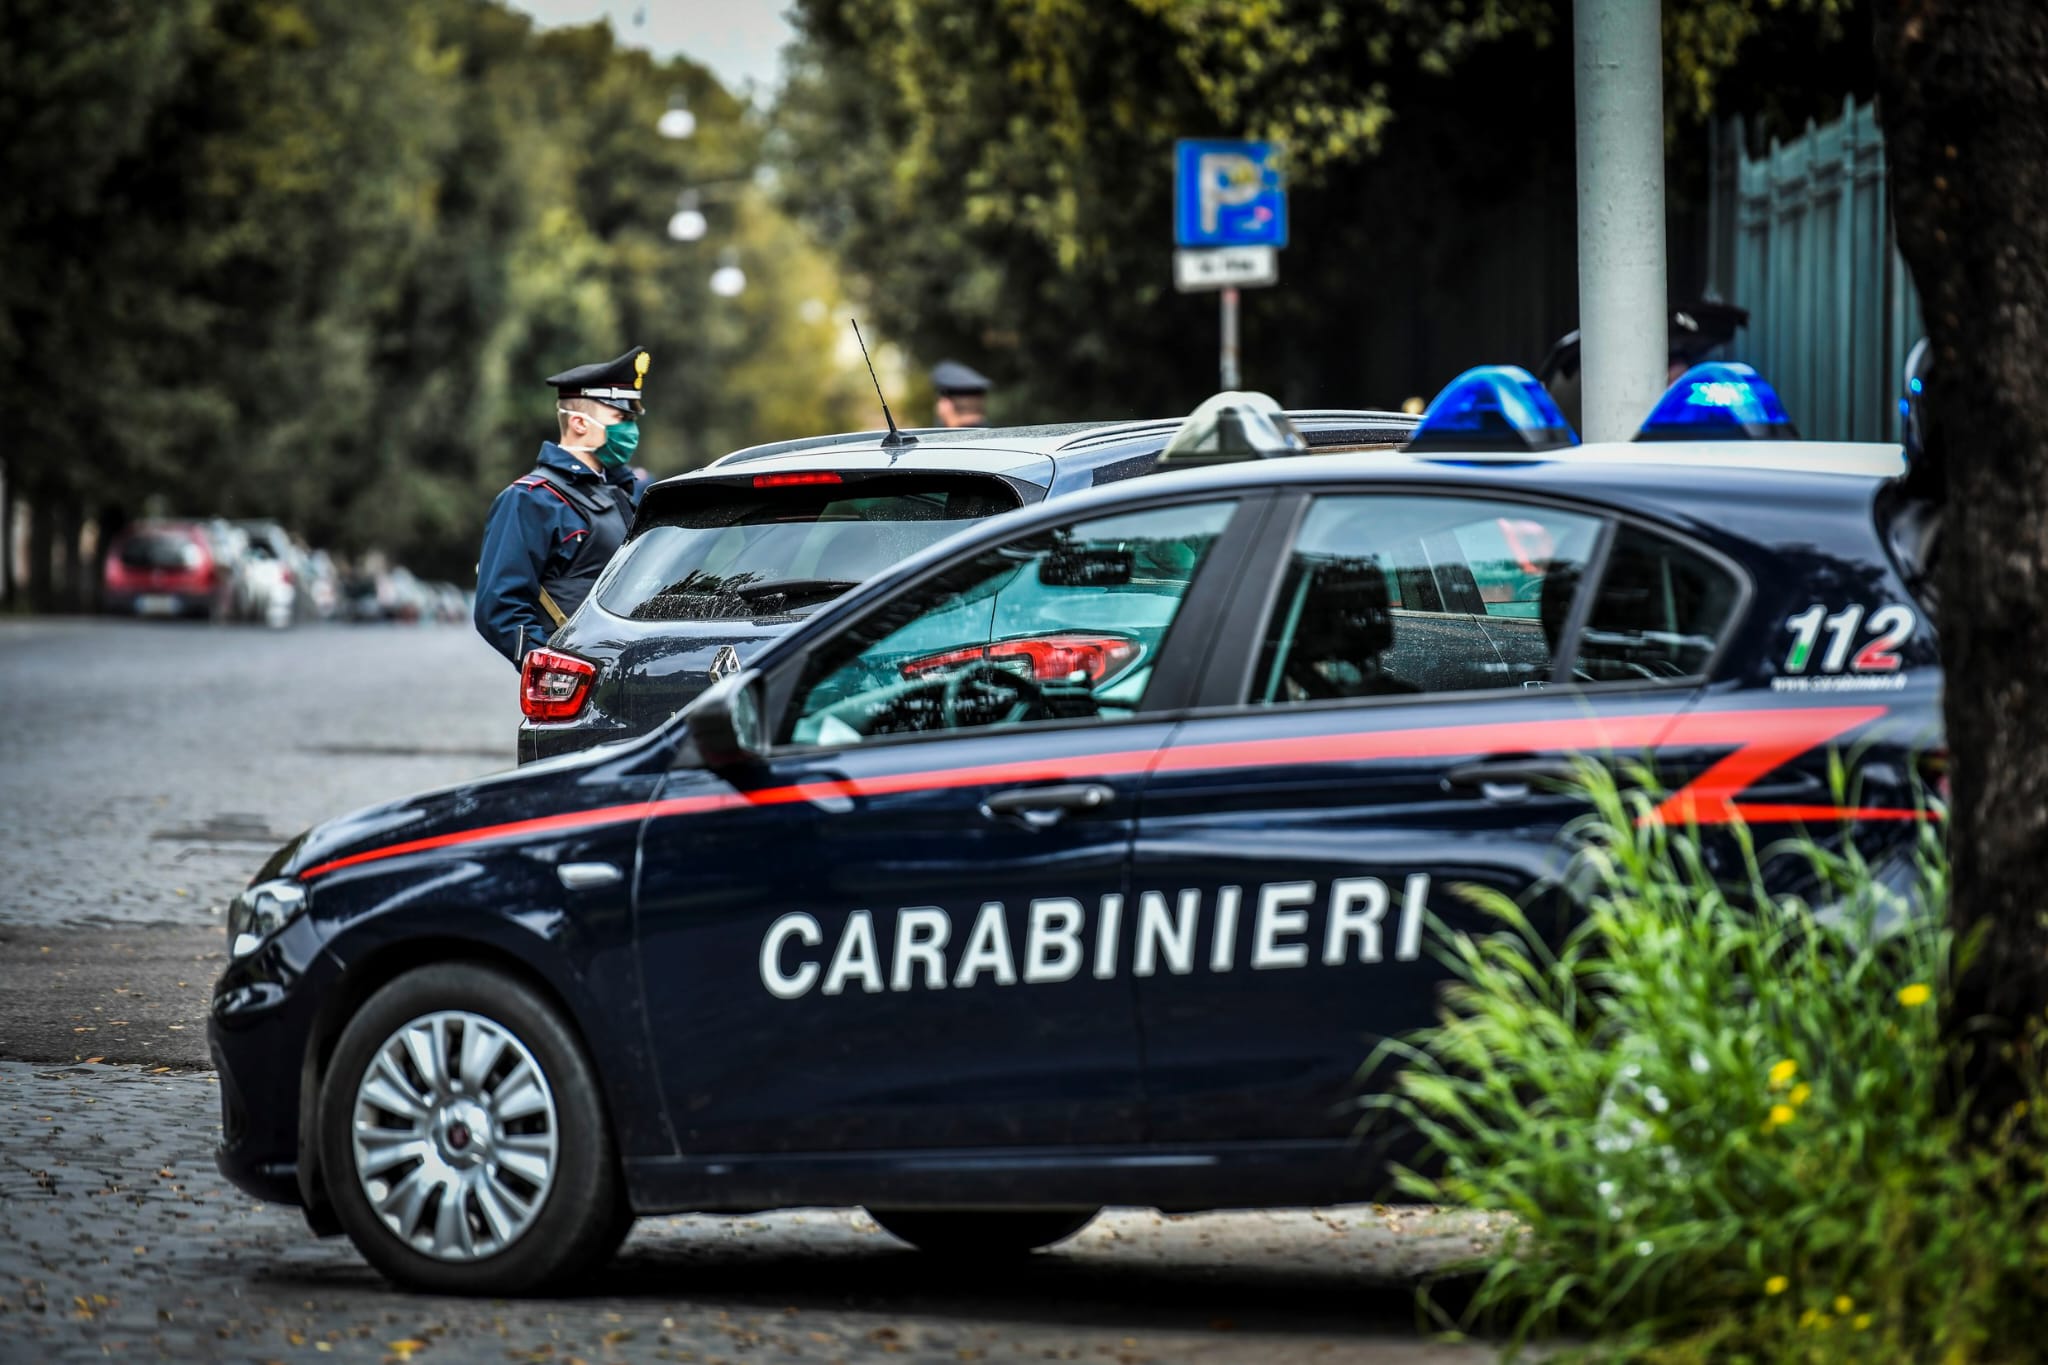 Roma, spacciava cocaina davanti a tutti: arrestato un 18enne